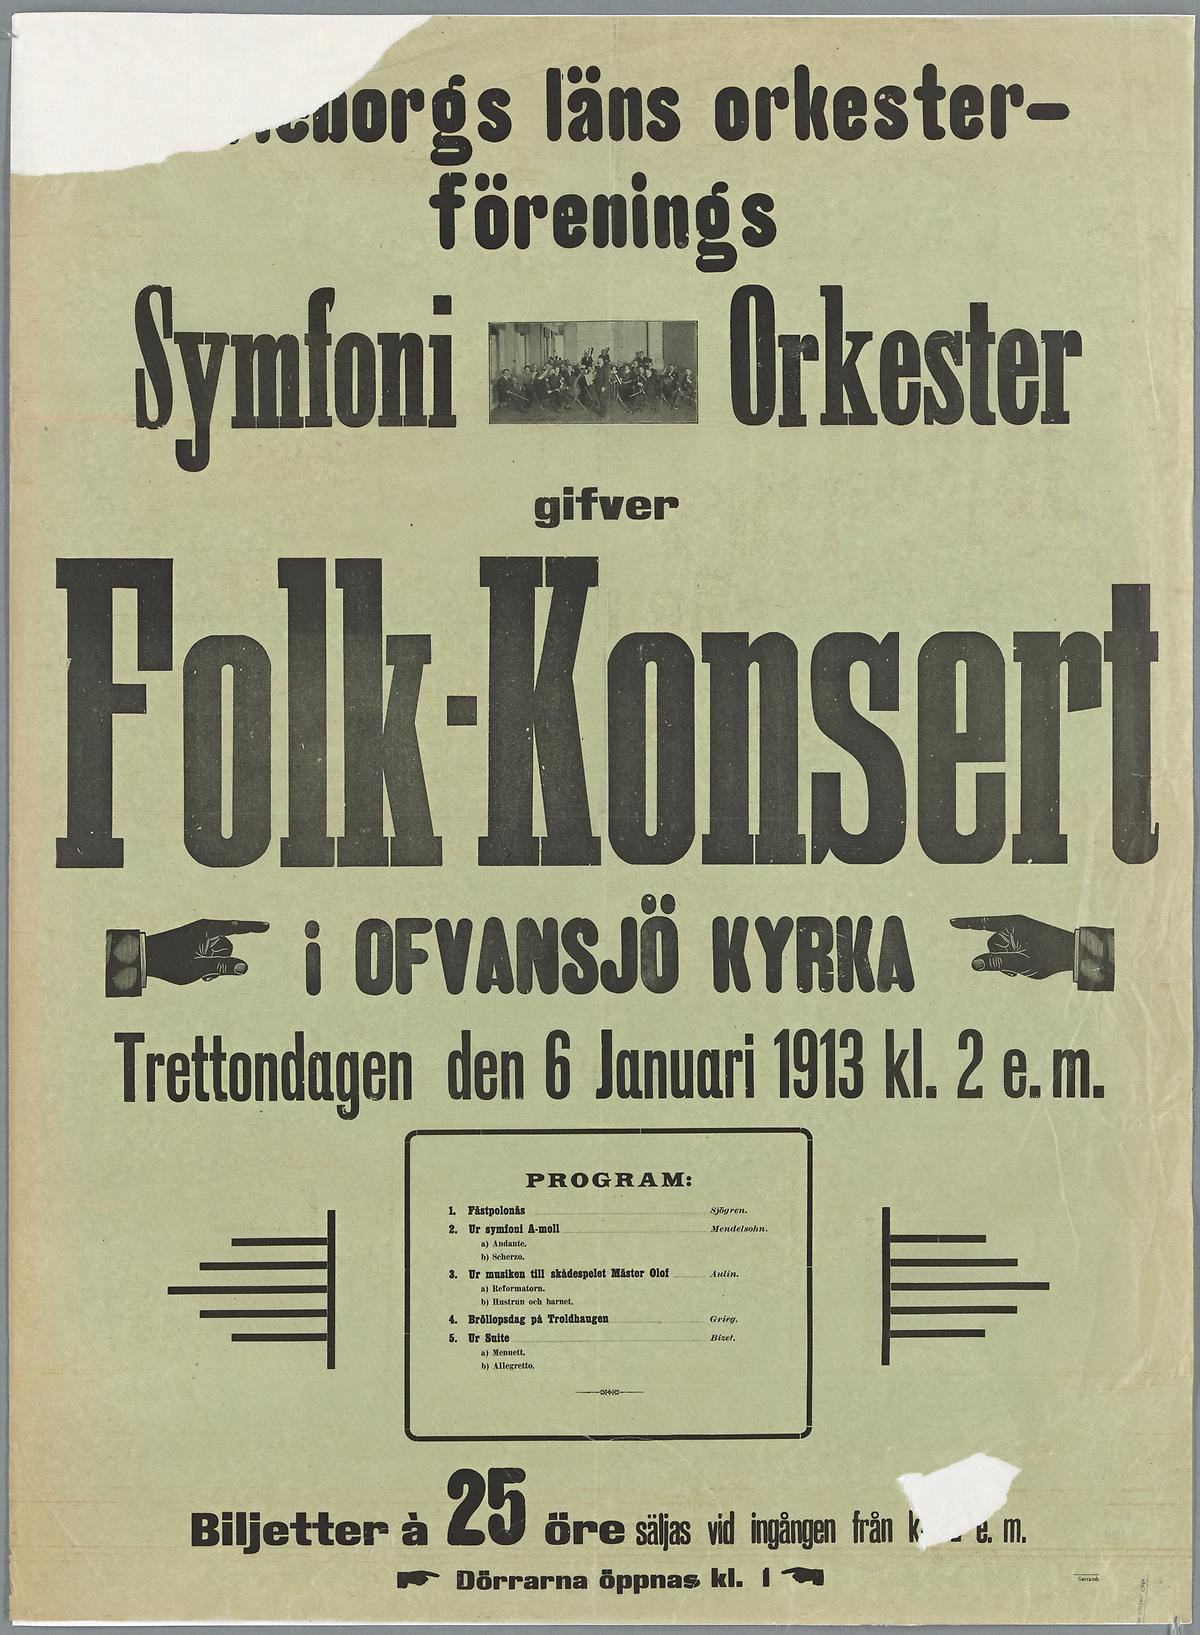 Folk-konsert i Ofvansjö kyrka. Gäfleborgs läns orkesterförenings symfoniorkester, 1913. Foto: Jens Östman, KB.